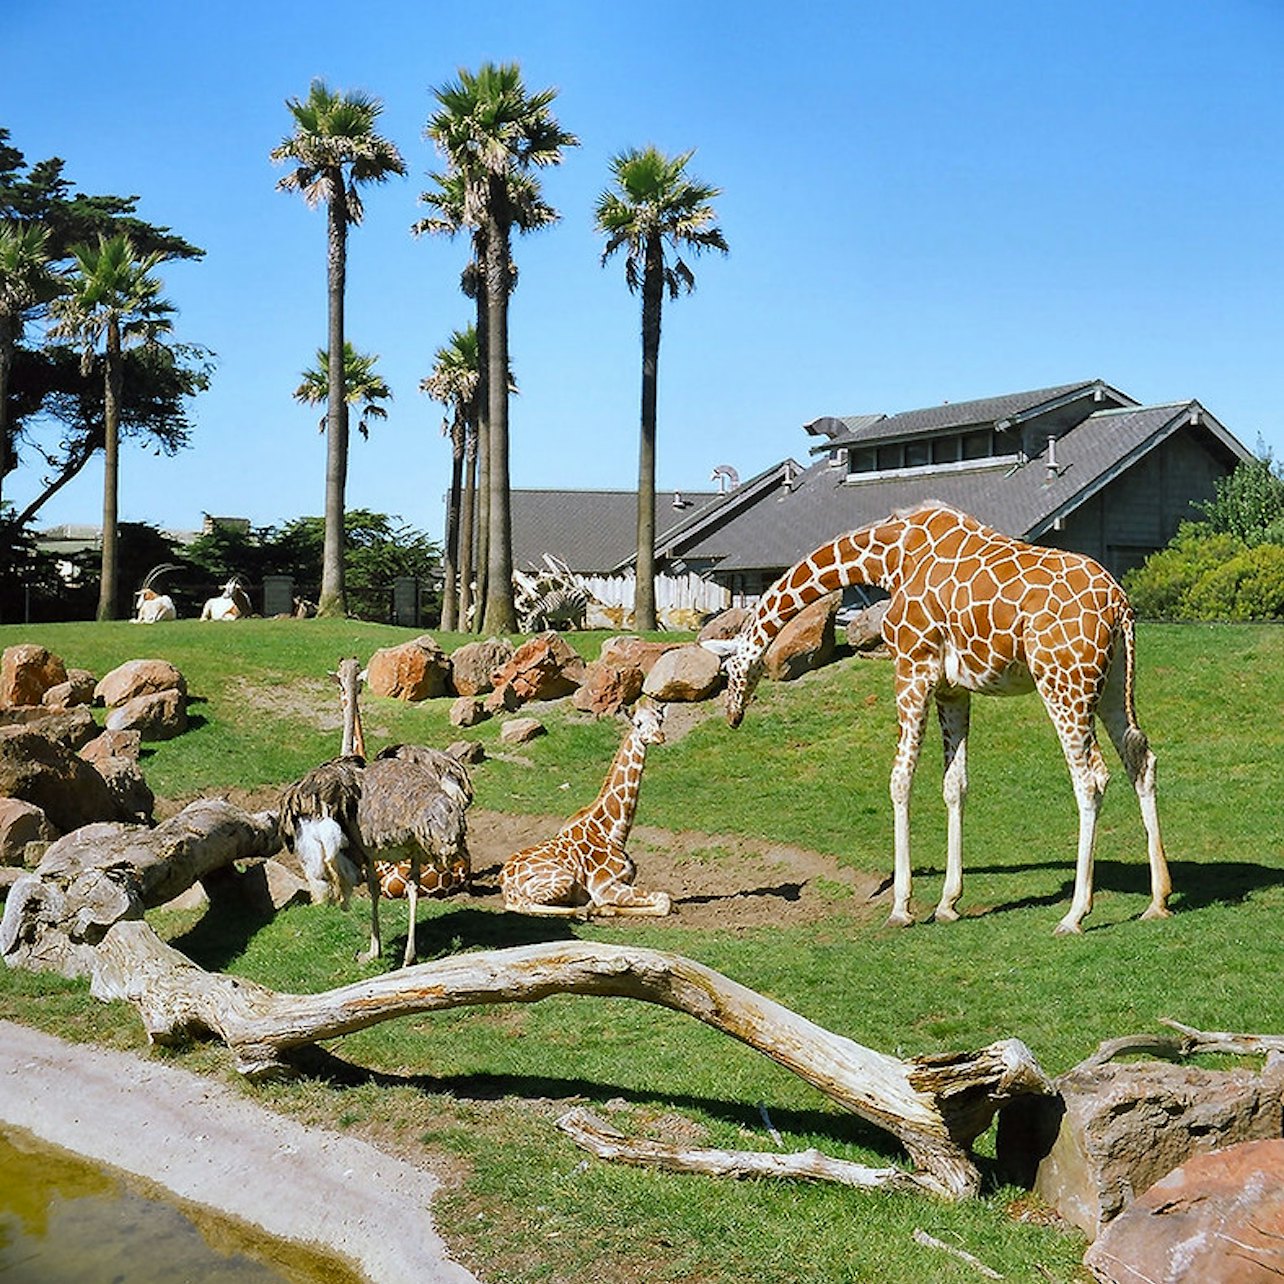 Zoológico de São Francisco: Ingresso - Acomodações em São Francisco